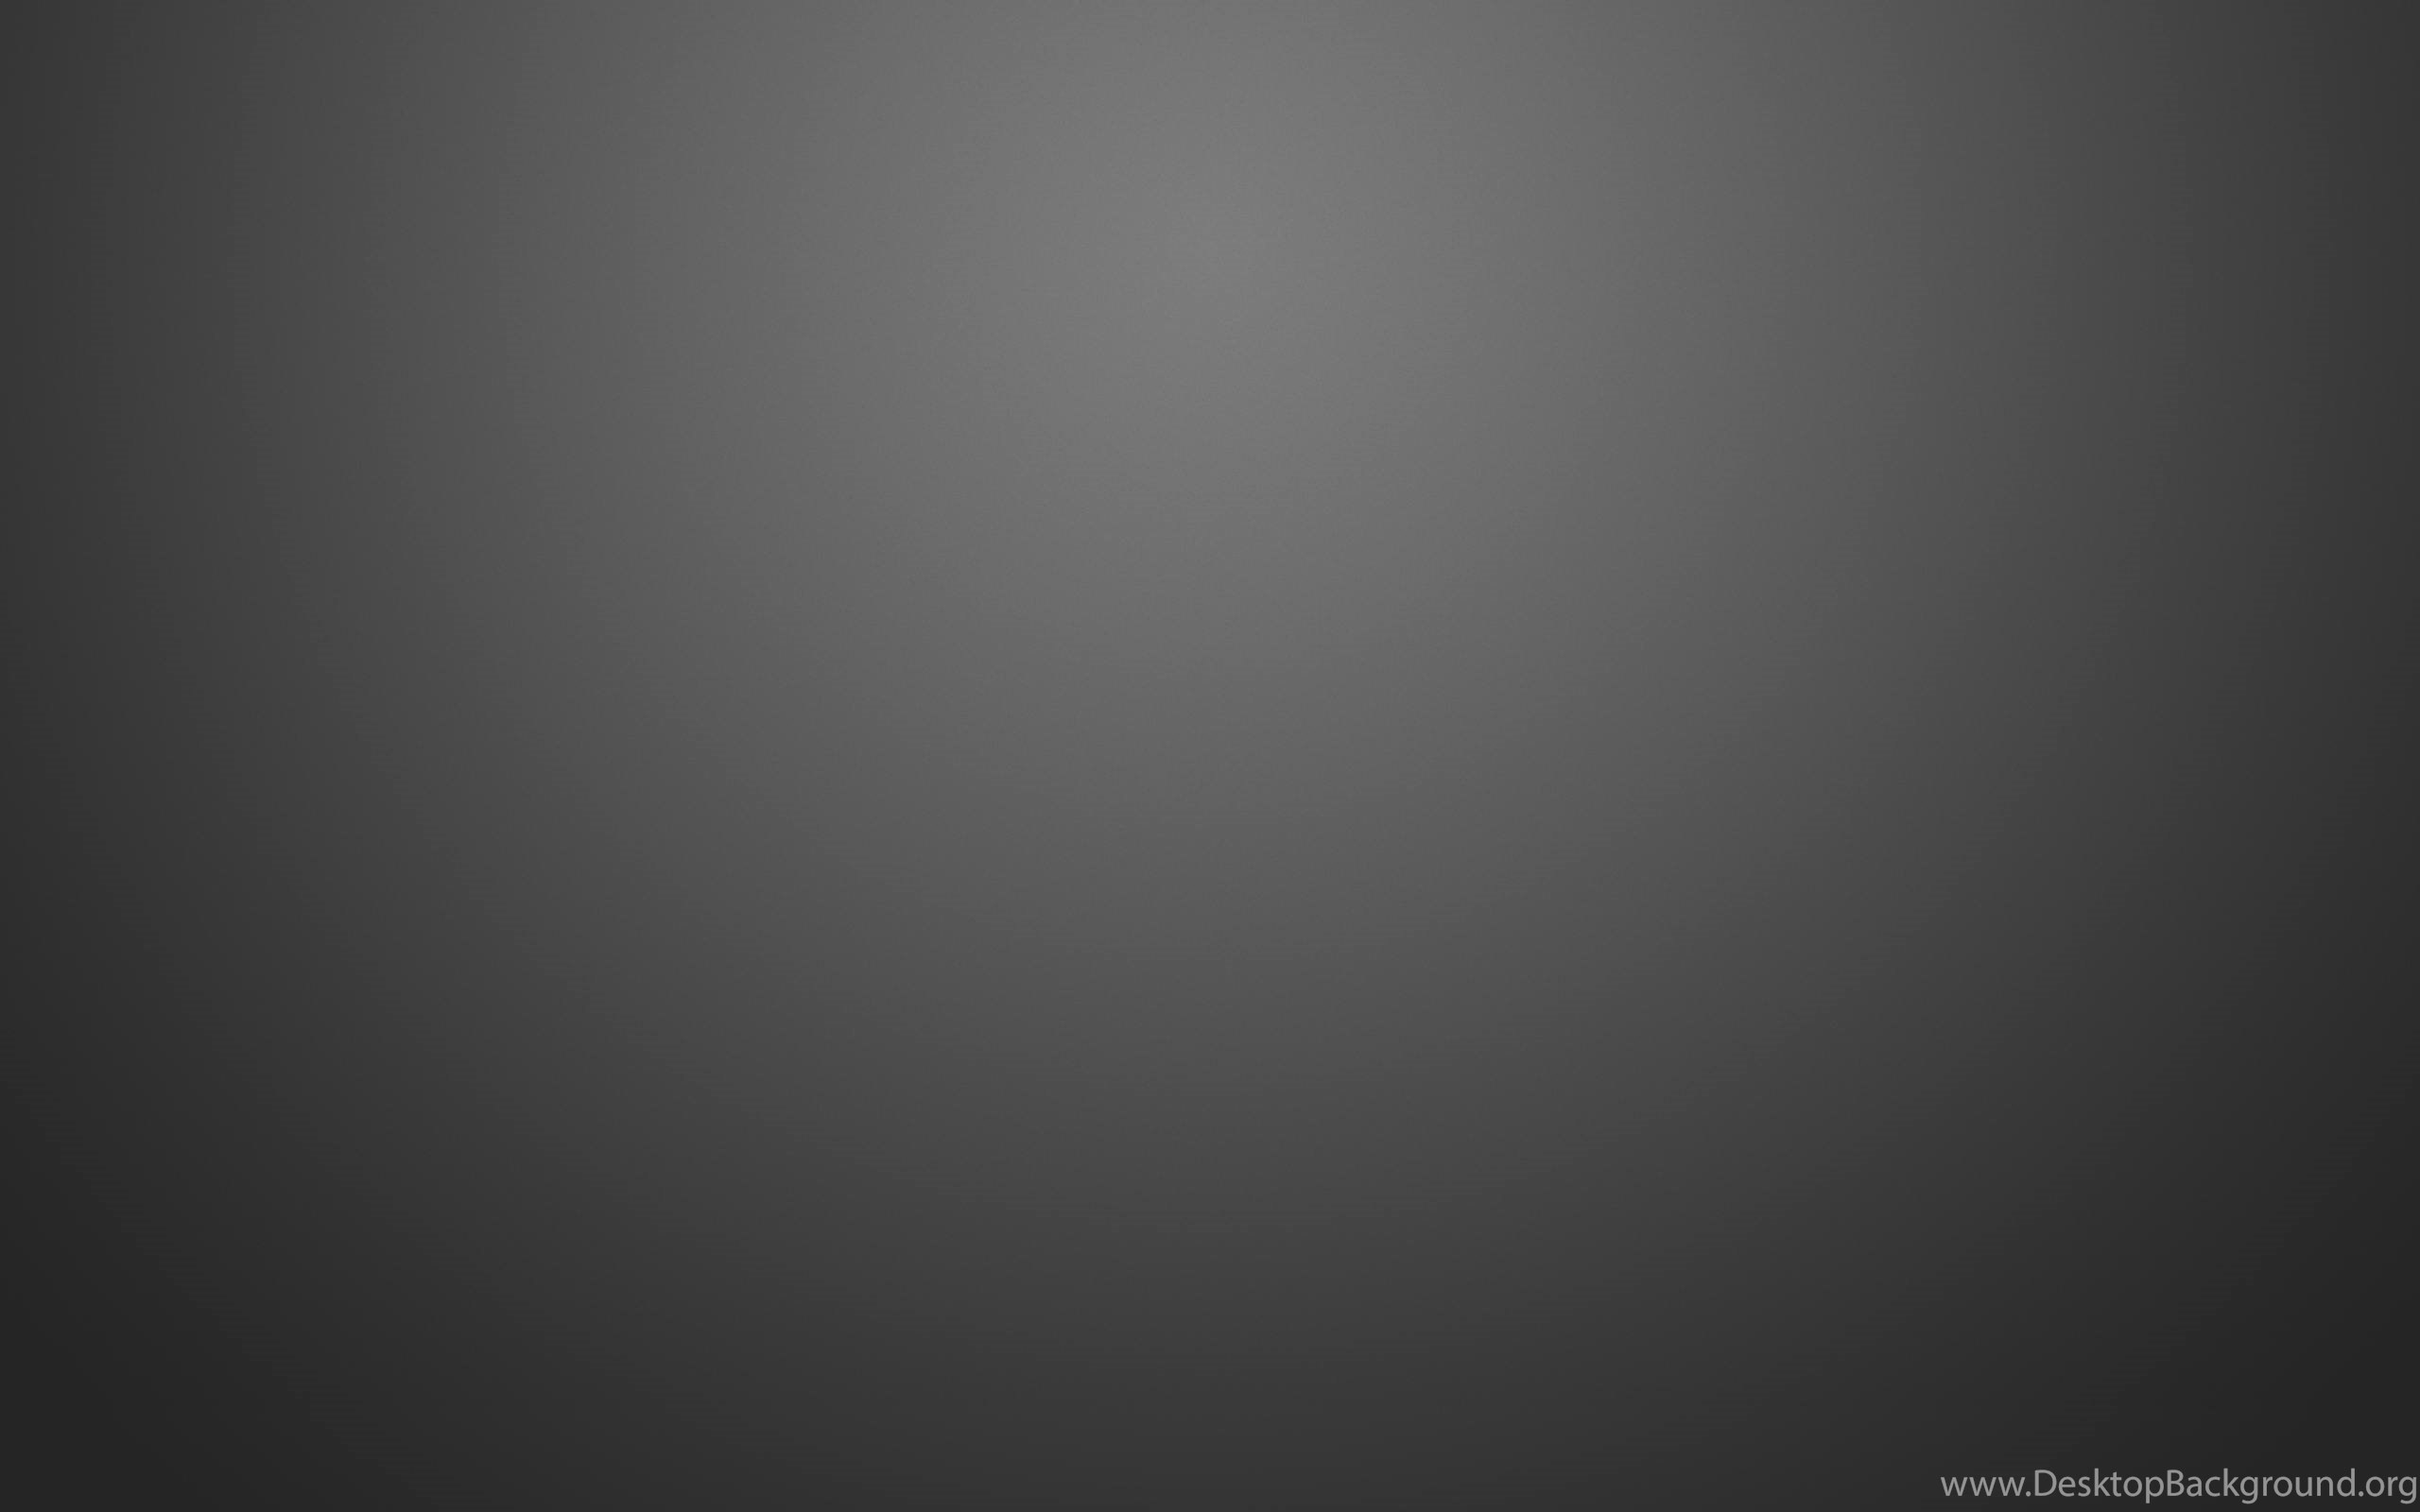 Plain Gray Wallpaper 1819 2560x1600 UMad.com Desktop Background